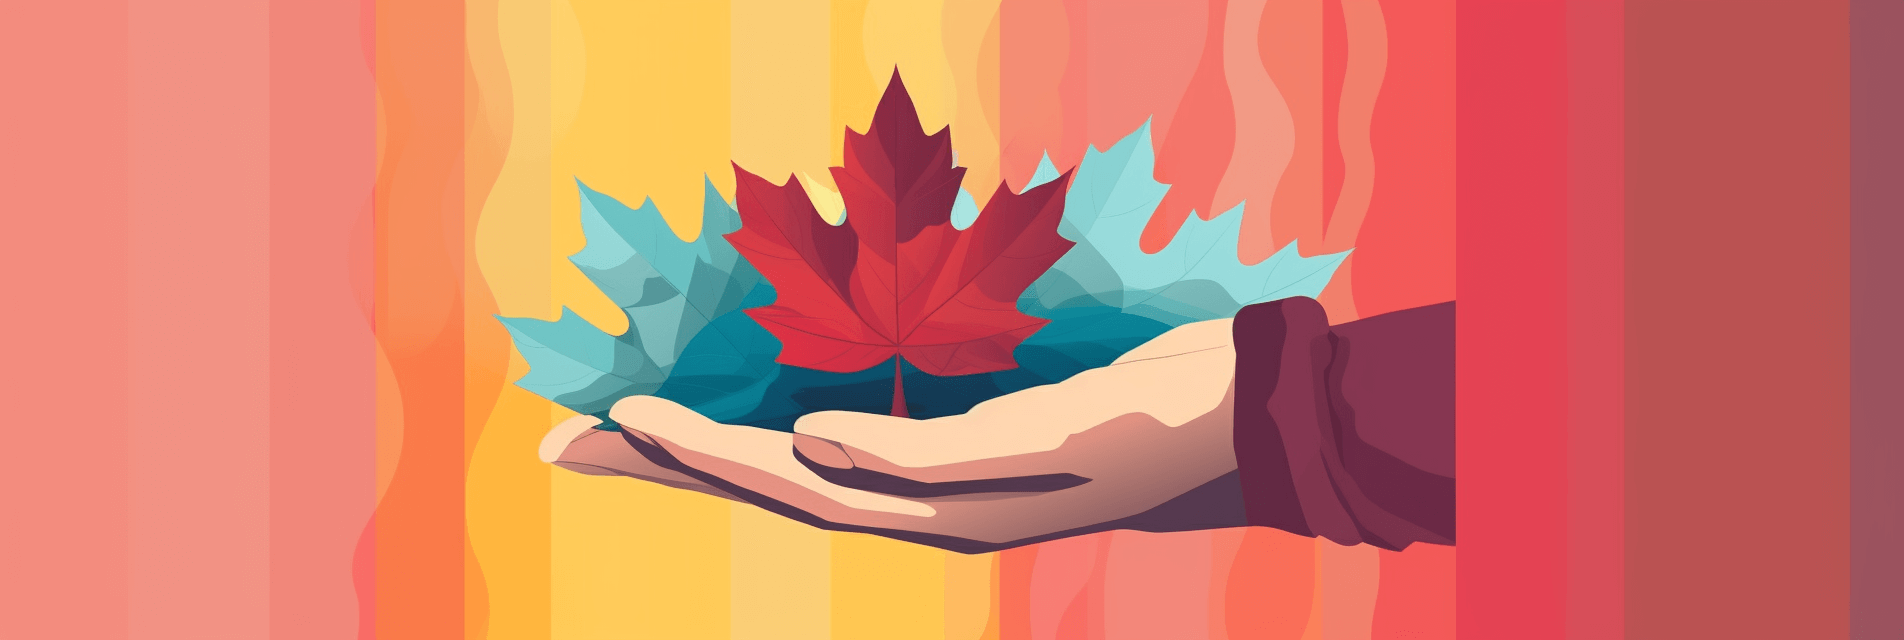 Featuring a canadian maple leaf a stylize 9cebb4b5650f4c60bb9f85a8c5045ba